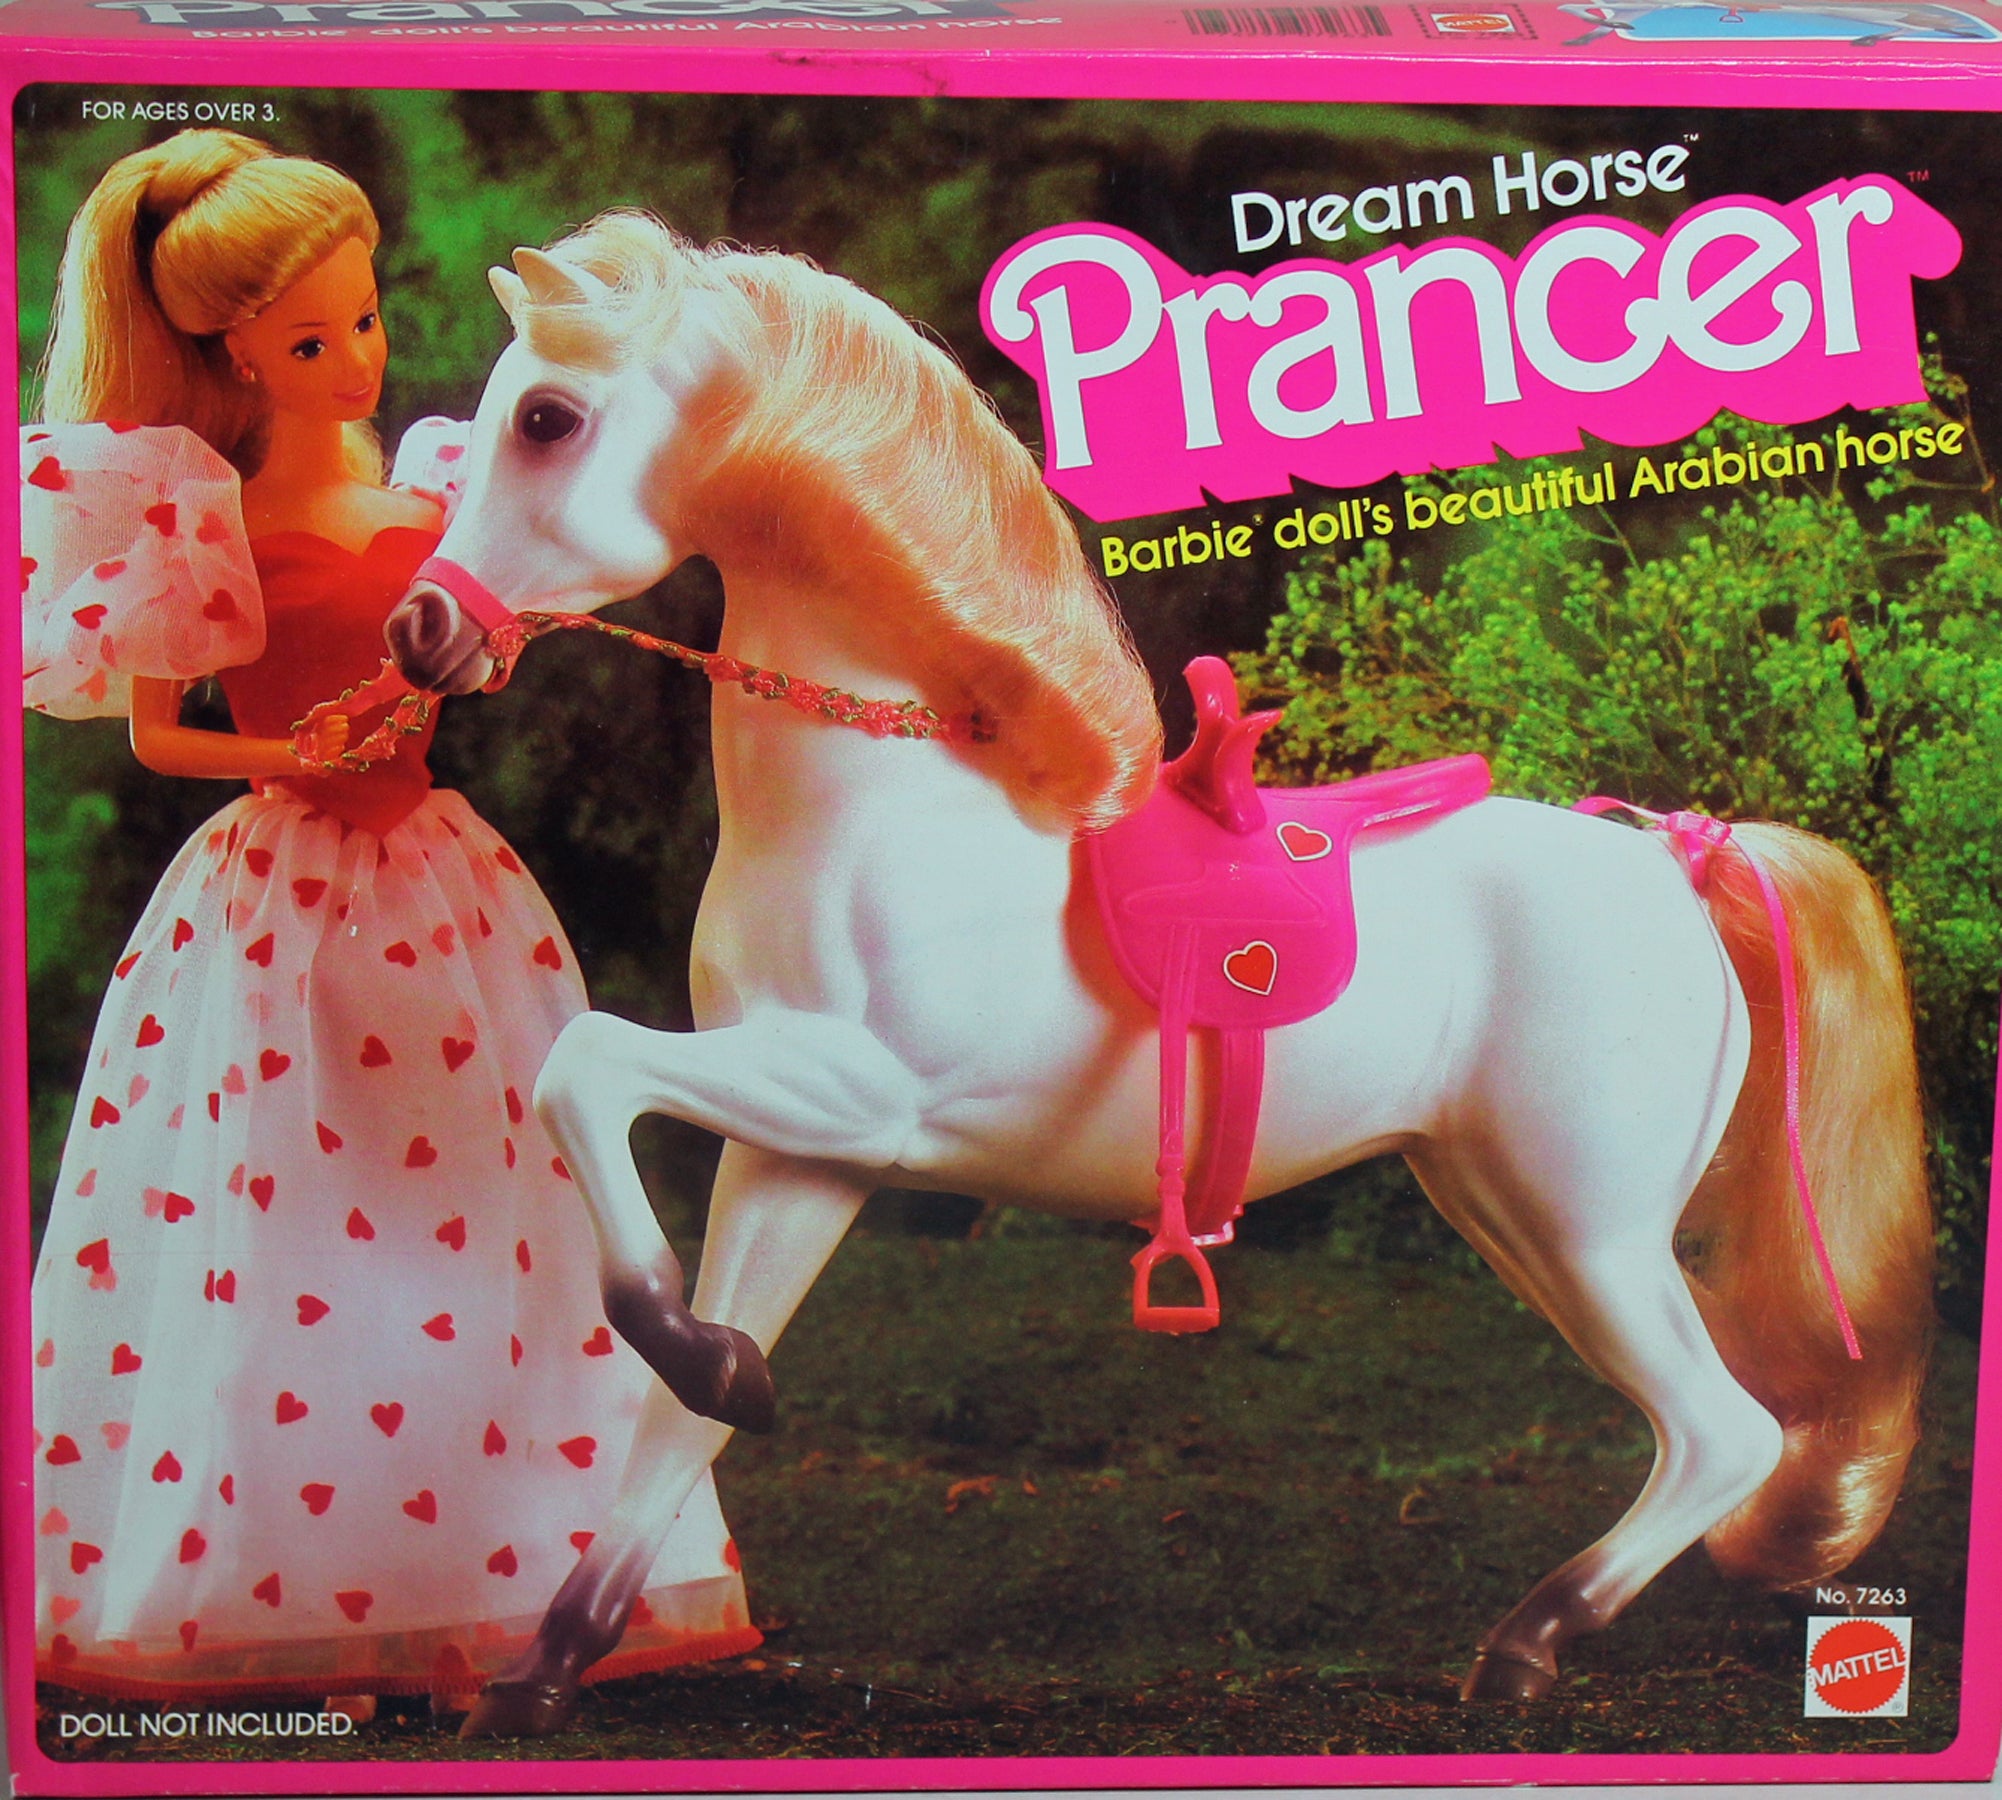 Kinematik cigar Udflugt 1983 Barbie Dream Horse Prancer Arabian – Sell4Value